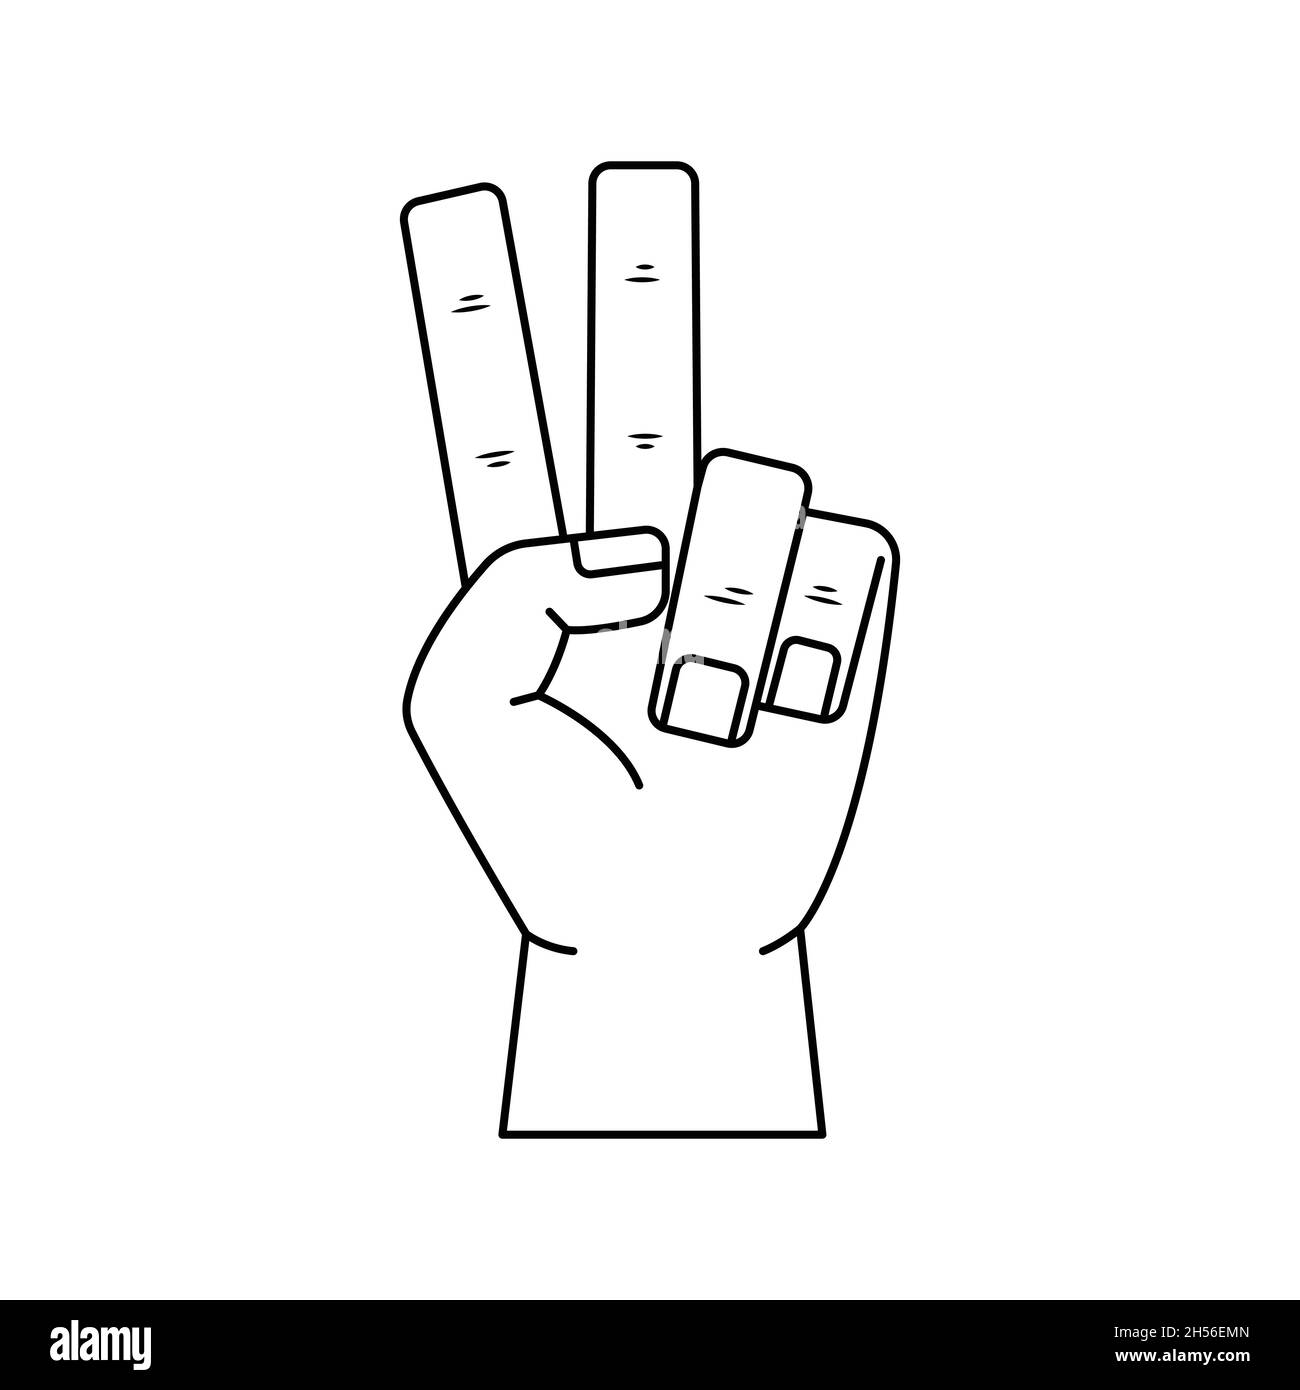 Illustrazione vettoriale dei gesti della mano - vittoria. Delineare la mano dell'uomo. Illustrazione Vettoriale